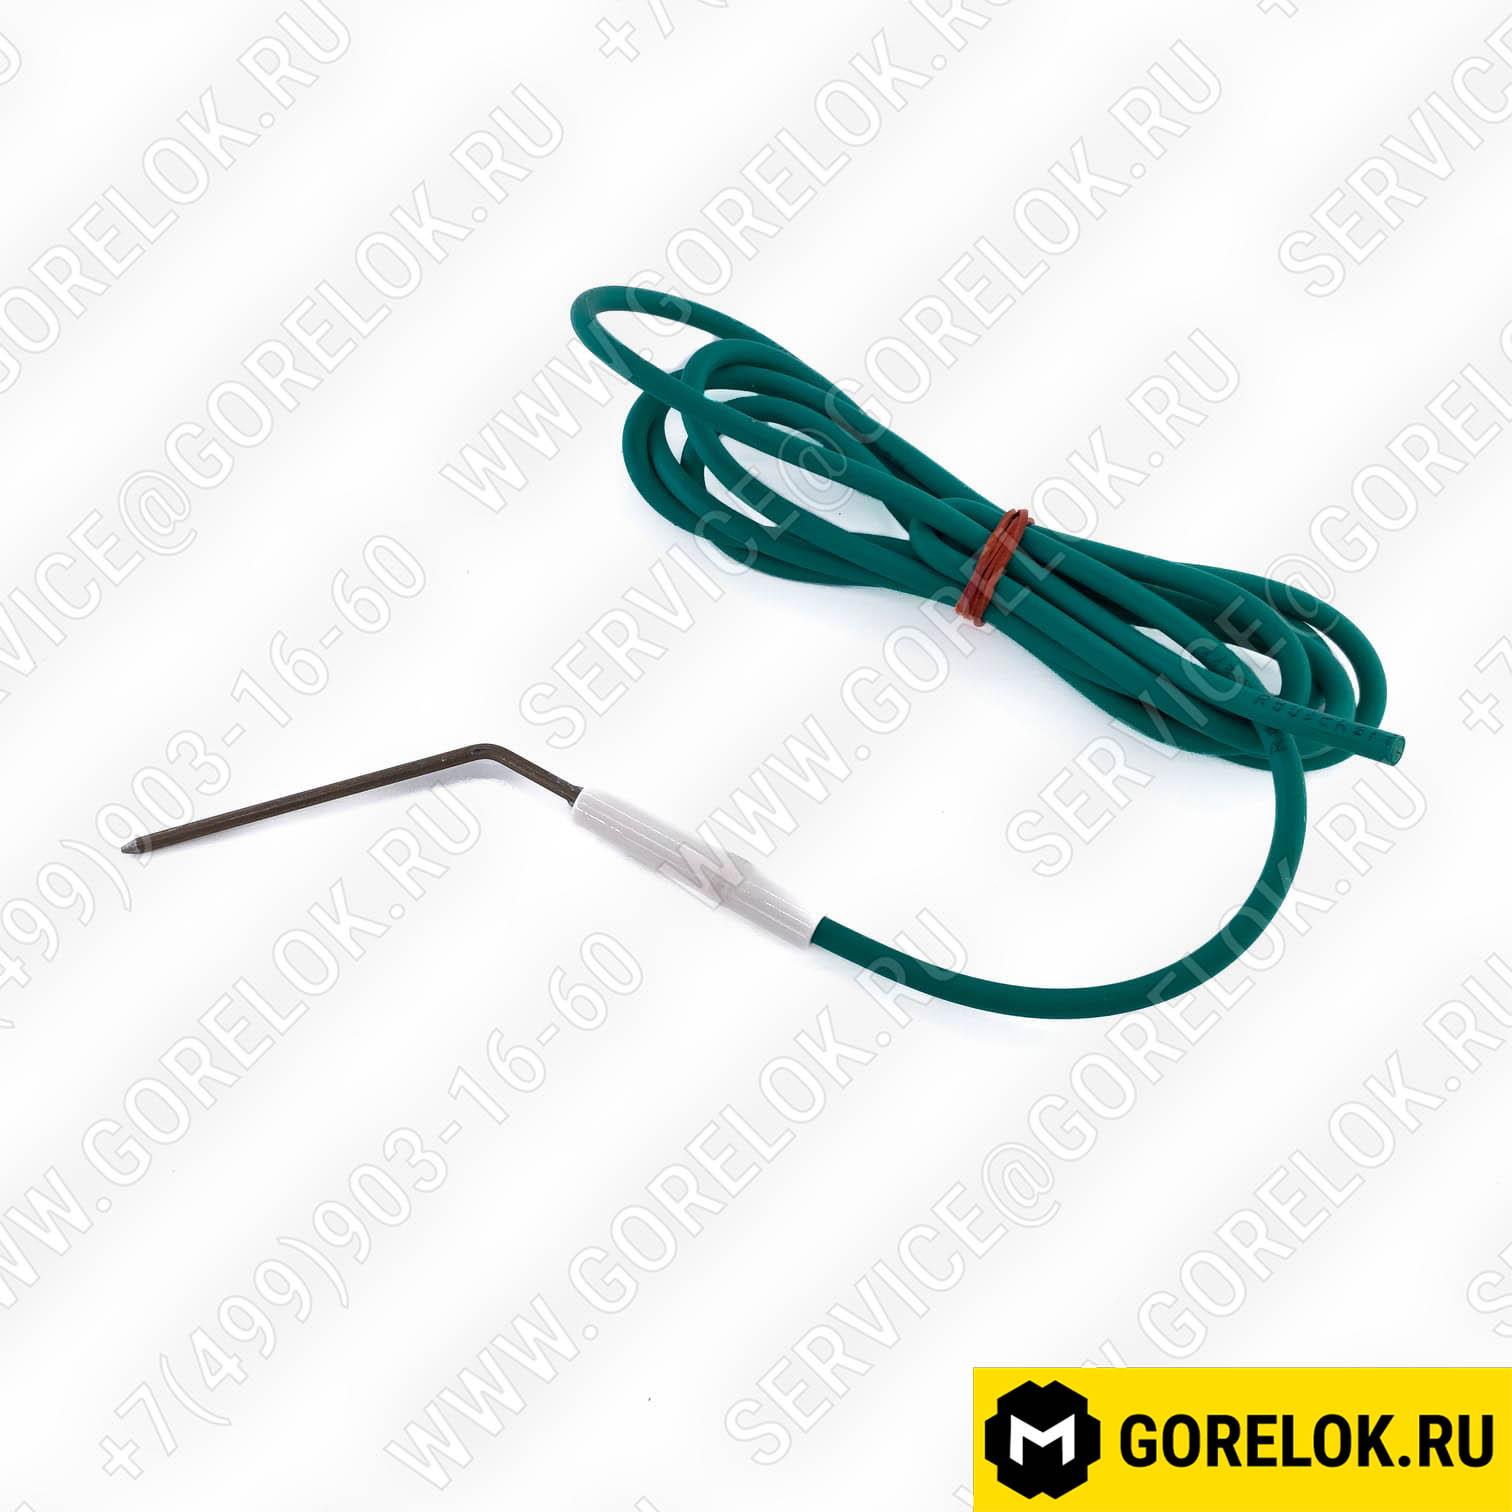 Электрод поджига с гибким кабелем 117,5 мм - 2000 мм : 65311911, 14075461